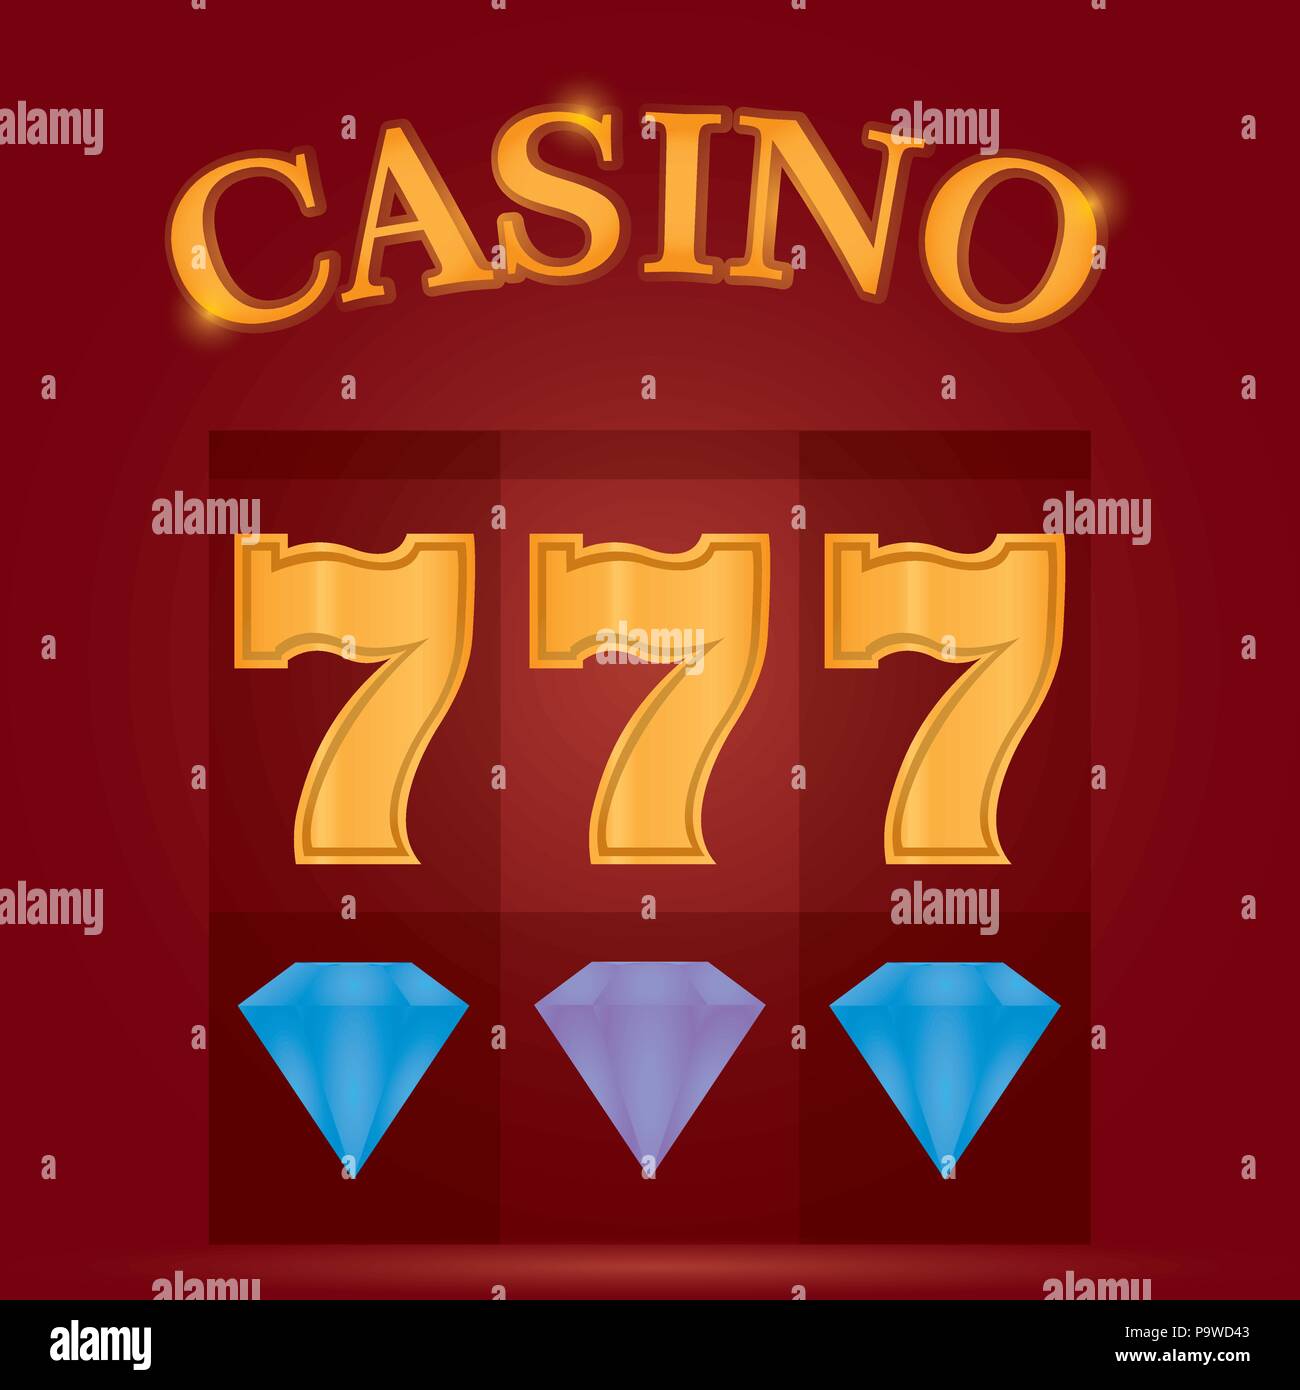 Casino-Spiel-Konzept Stock Vektor